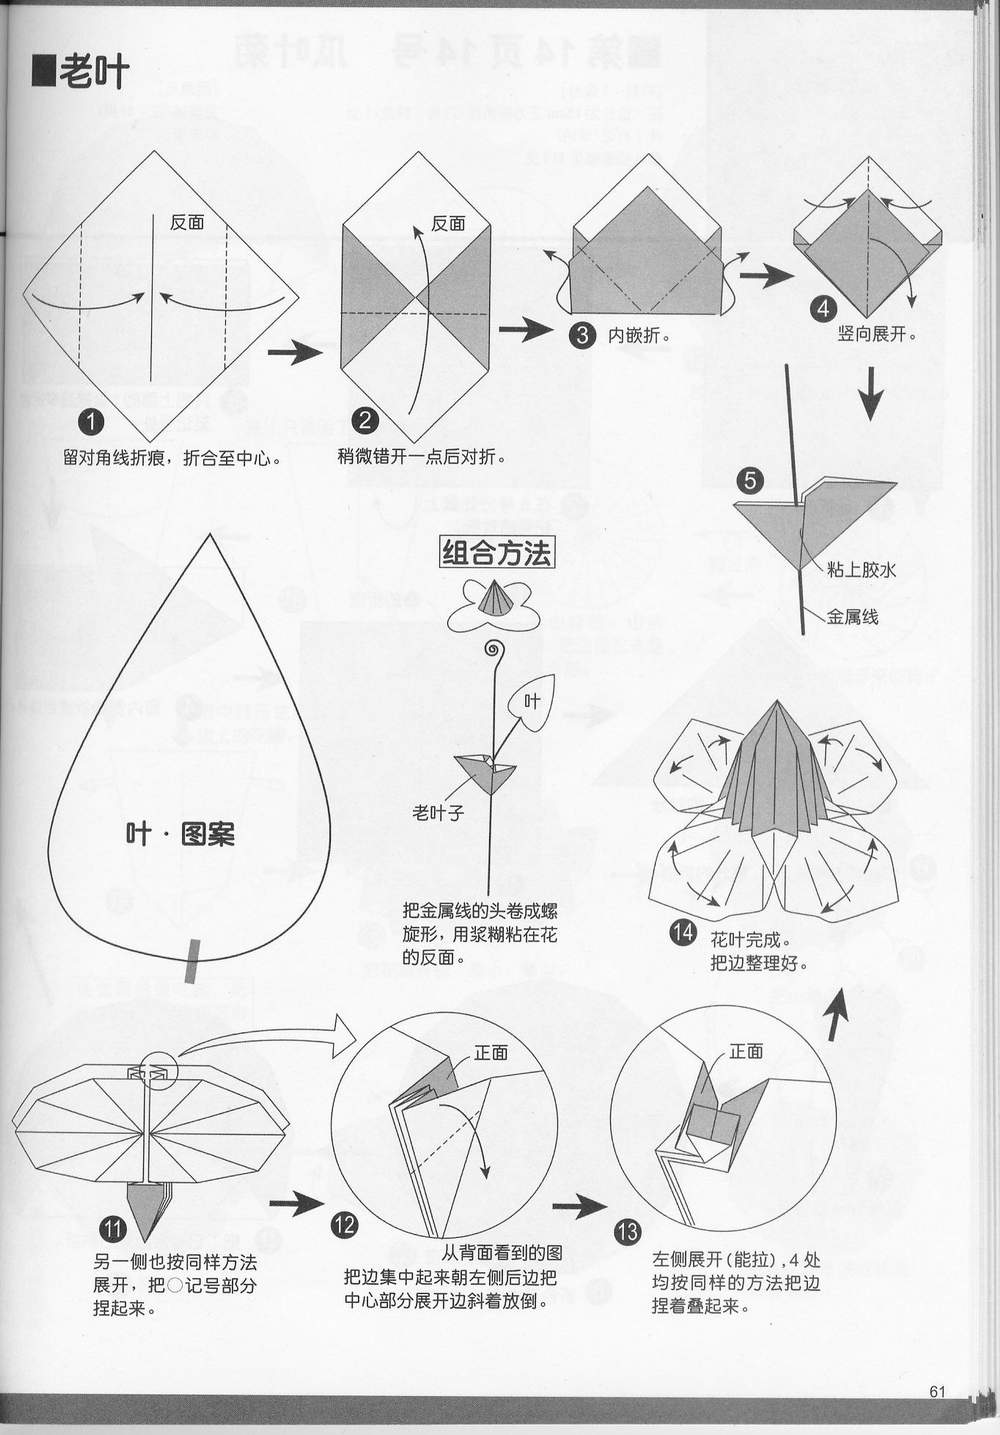 kwiaty- origami - 1125899906926315.jpg